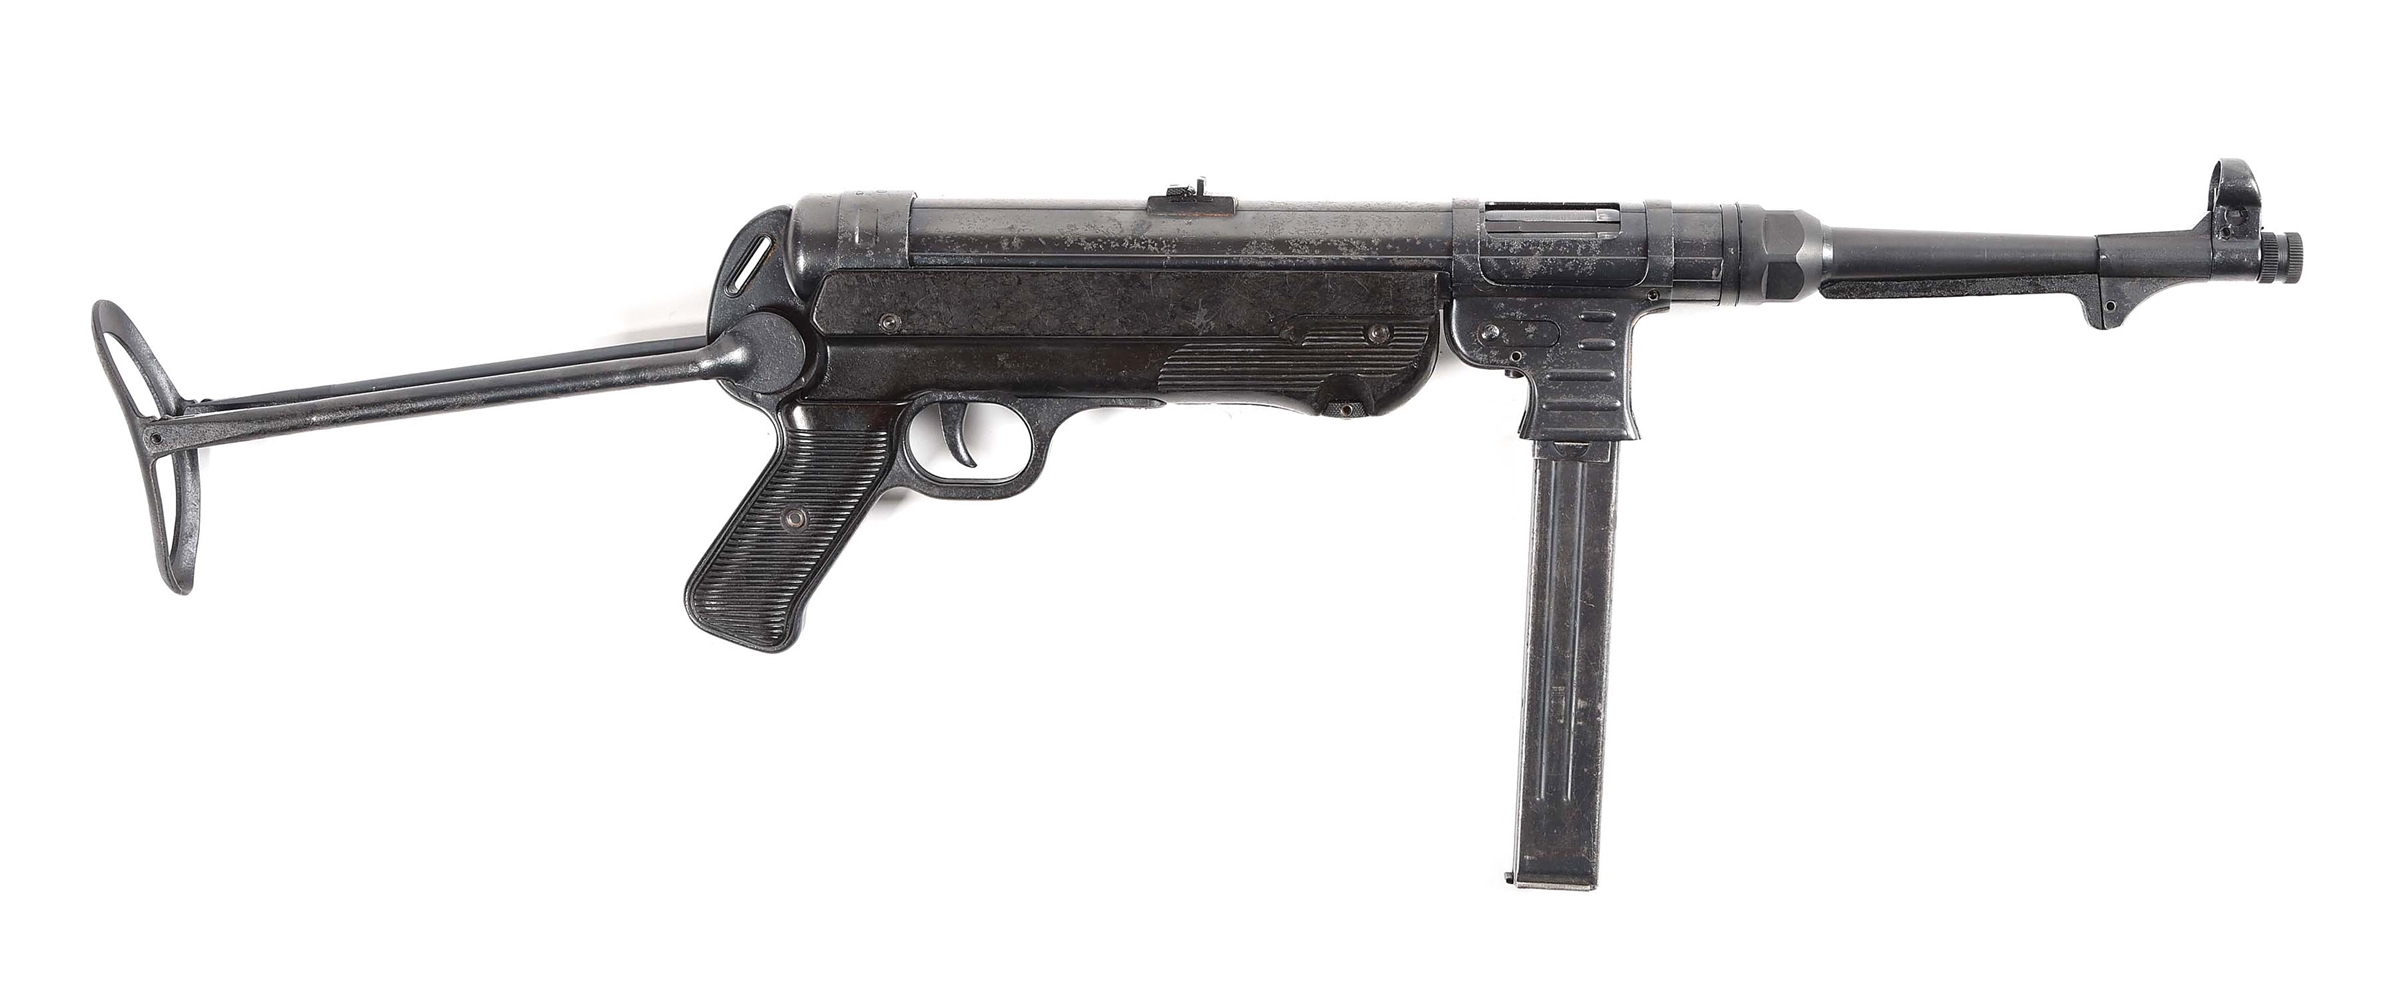 (N) REFINISHED STEYR MANUFACTURED GERMAN WORLD WAR II MP-40 MACHINE GUN (CURIO & RELIC).